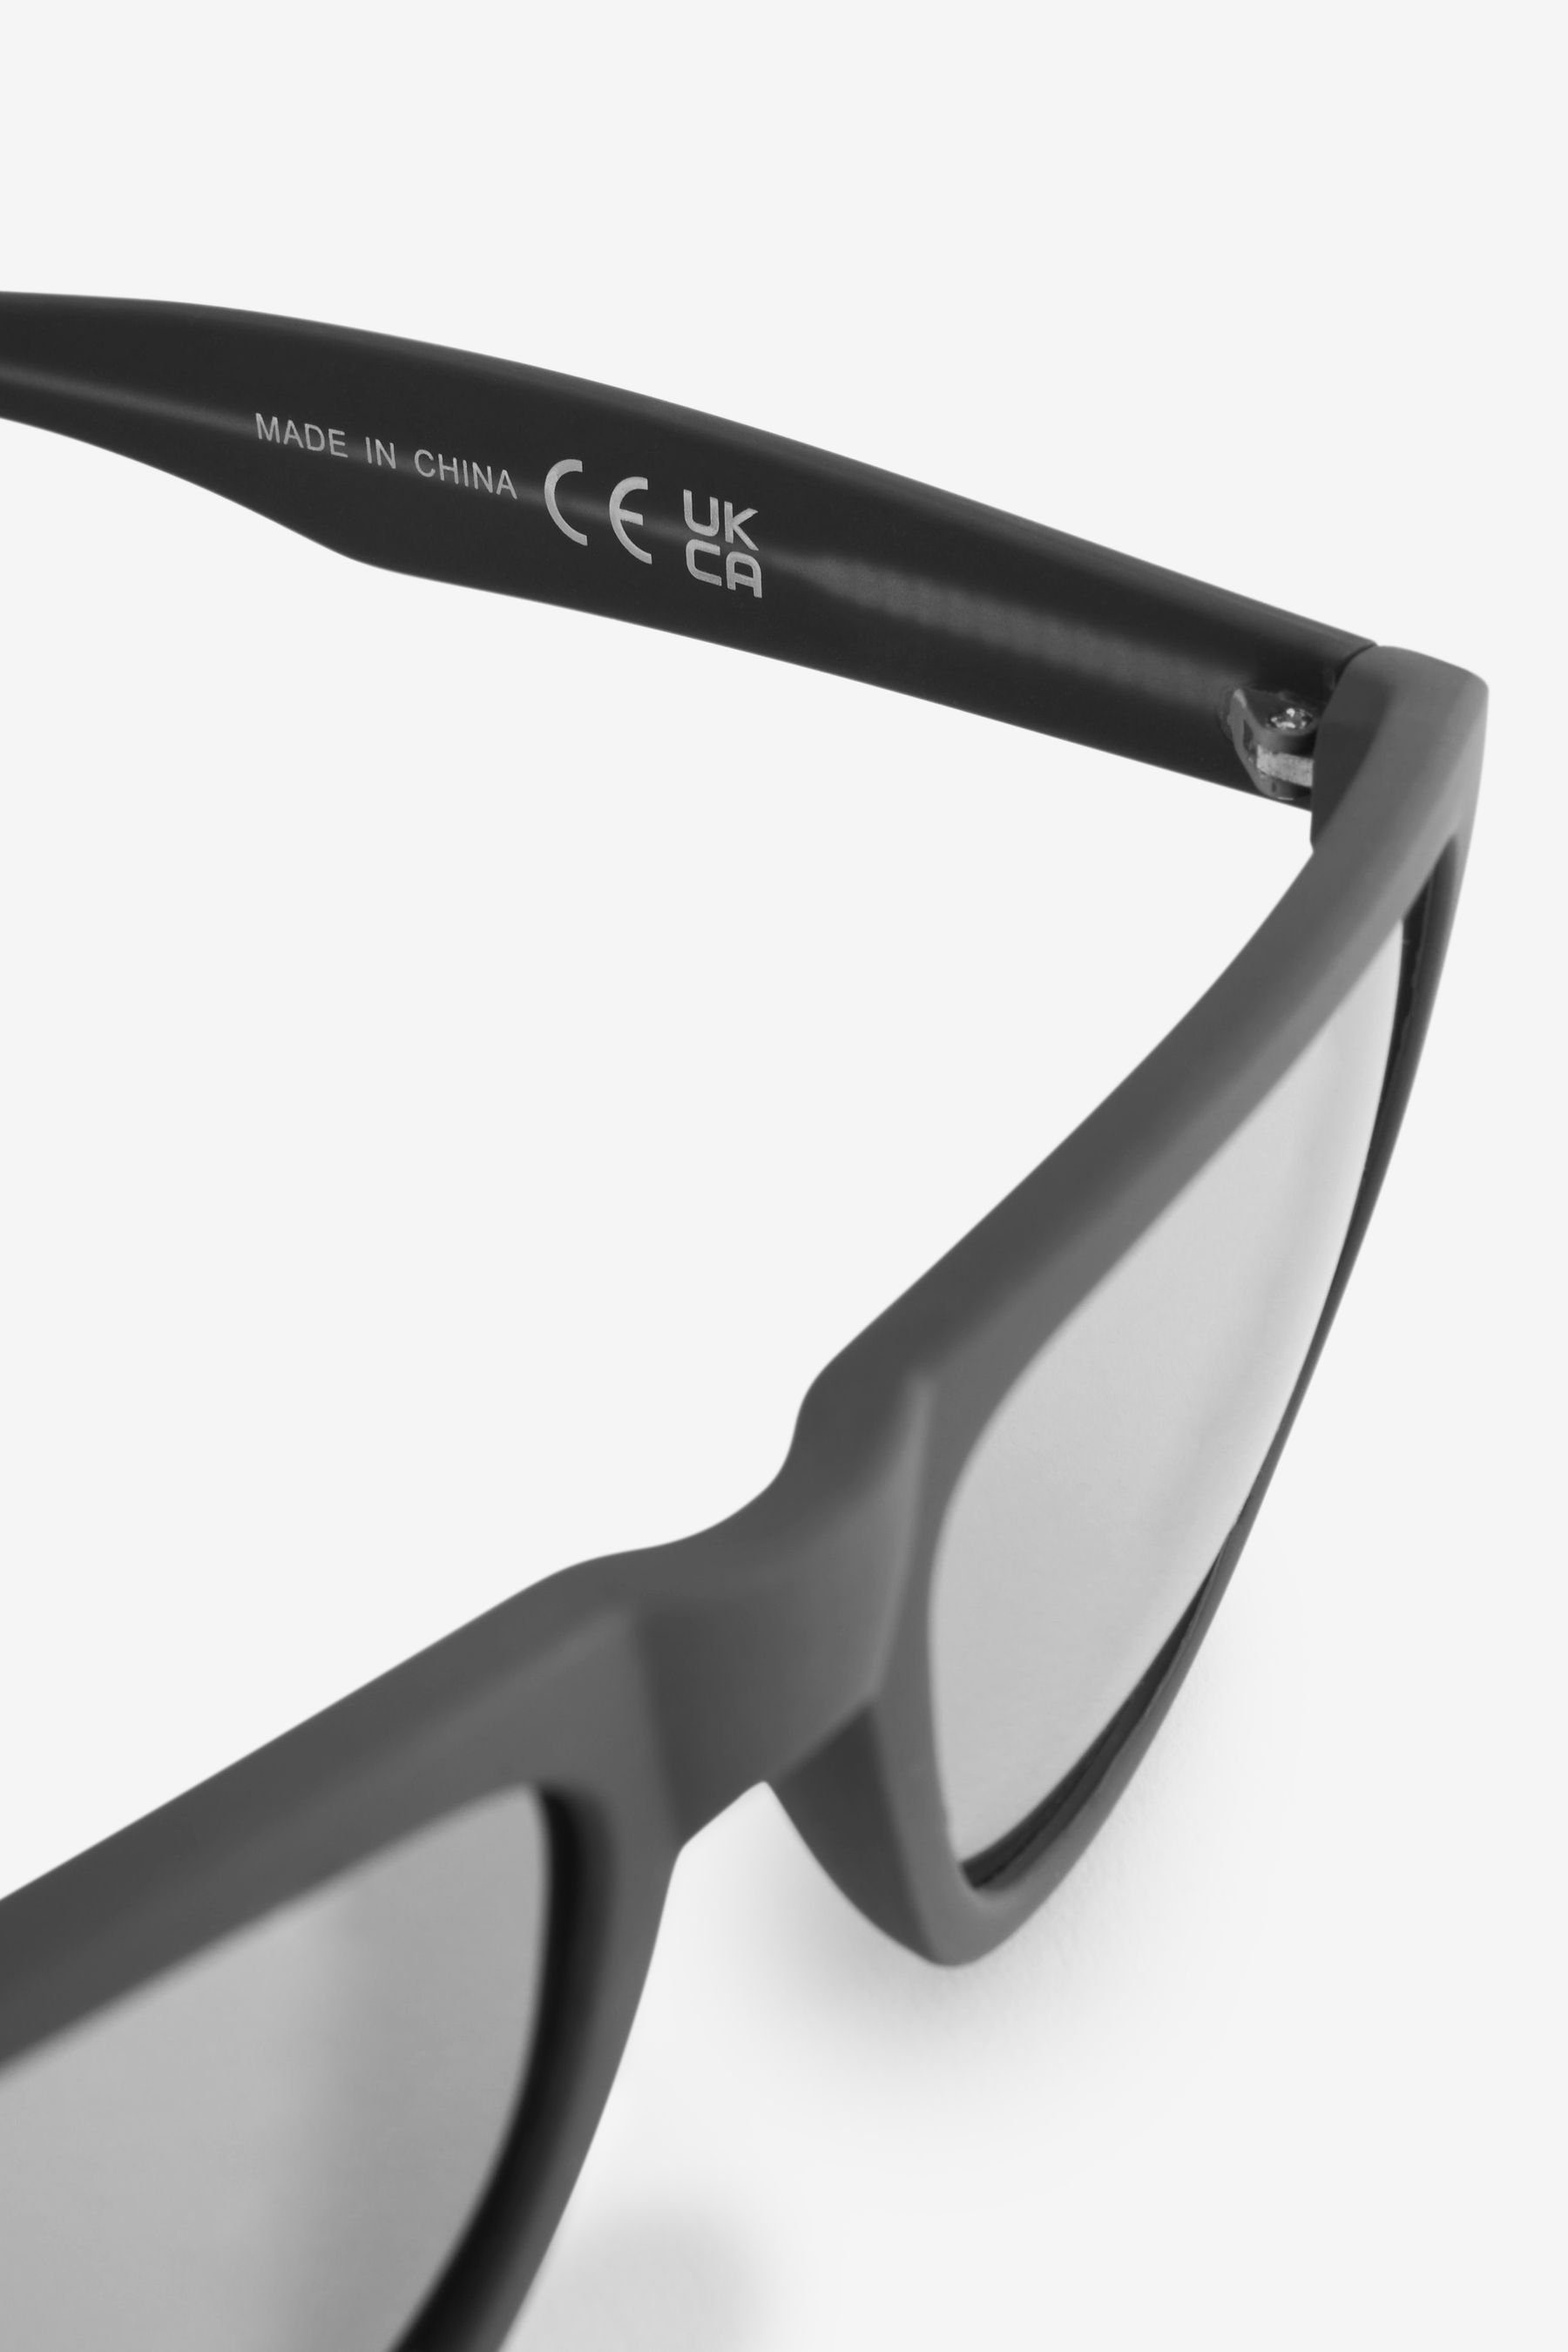 Pilotenbrille (1-St) Gläsern mit Eckige Sonnenbrille Next polarisierten